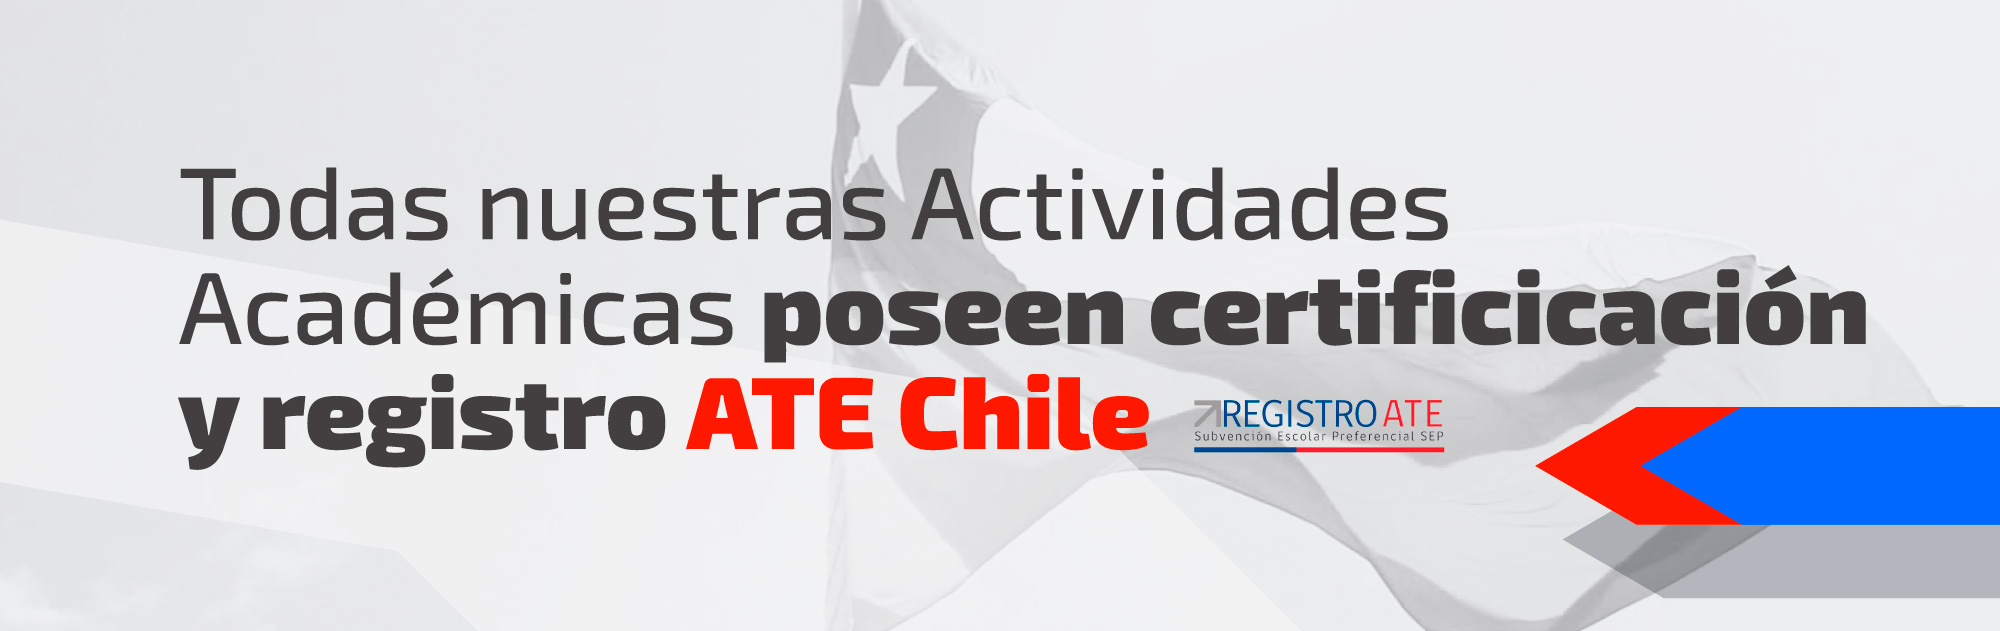 Todas nuestras Actividades Académicas poseen Registro ATE Chile